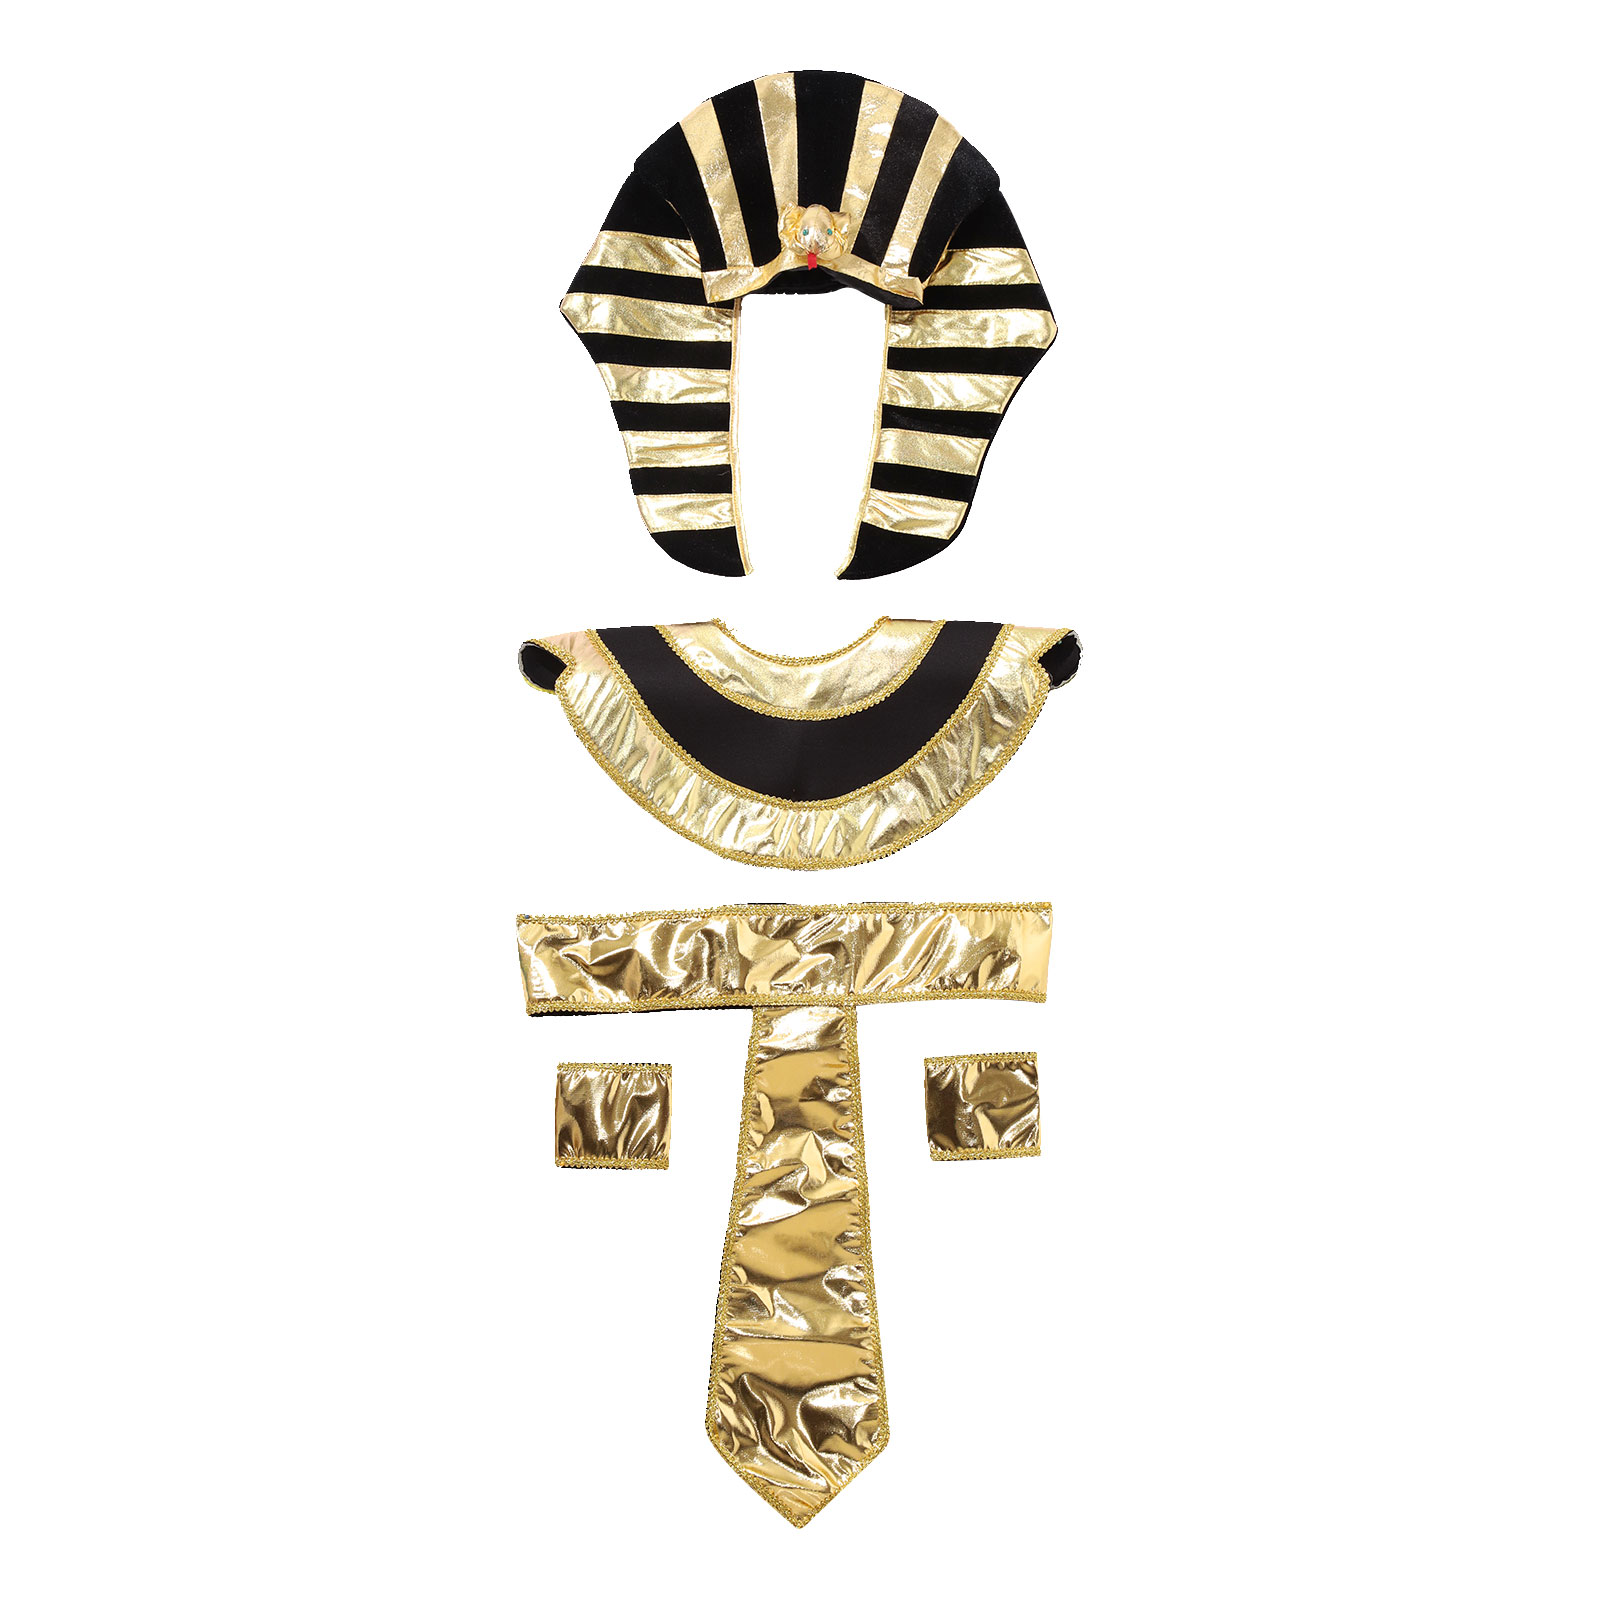 Hombres Mujeres Ancient Egipcio Faraón Cosplay Accesorio de vestuario Halloween Oro Tors Cleopatra Ancient Roman Queen Party